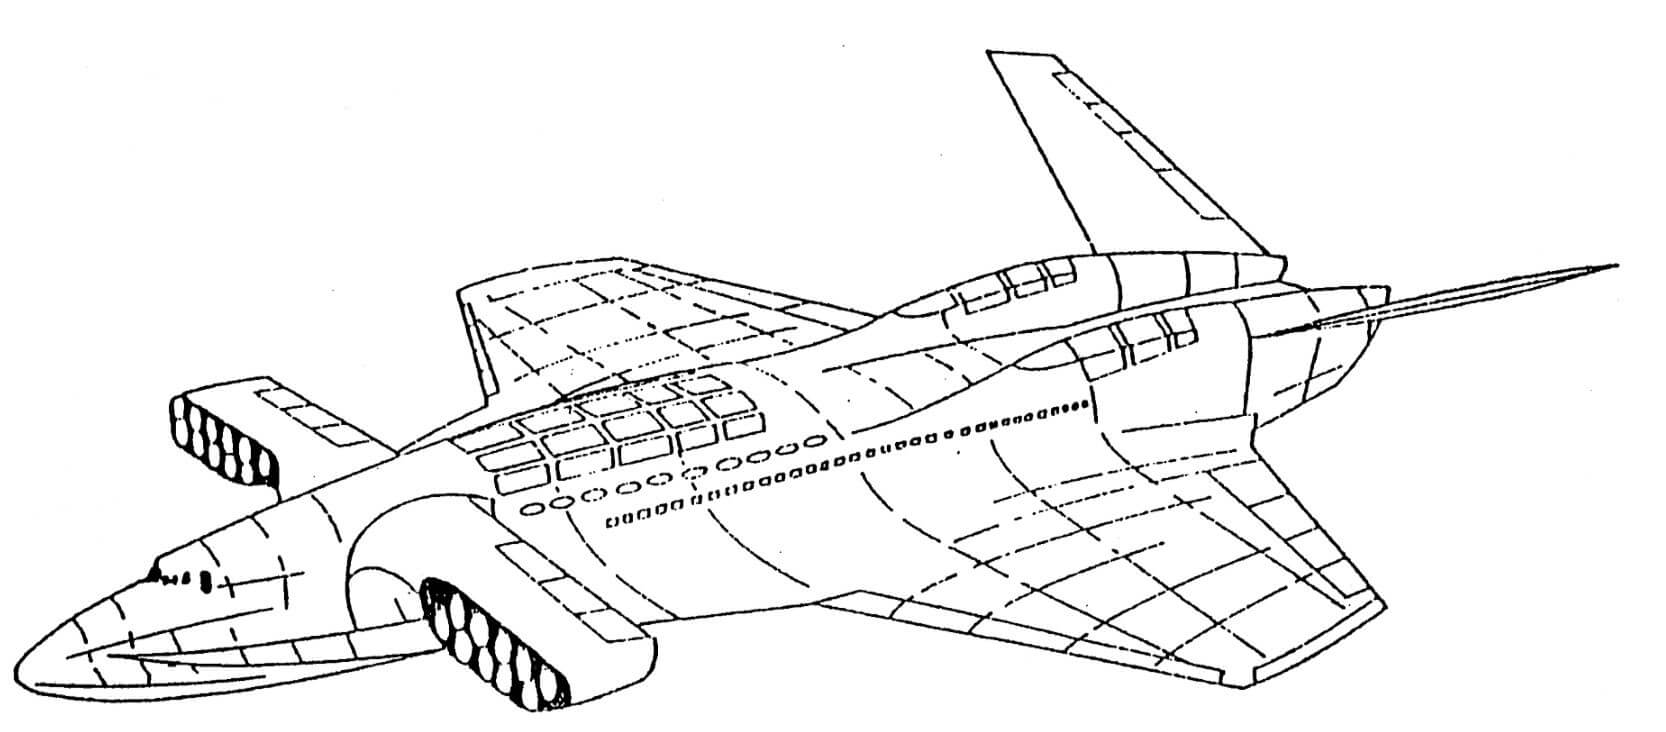 Aerocon Dash 1.6 wingship